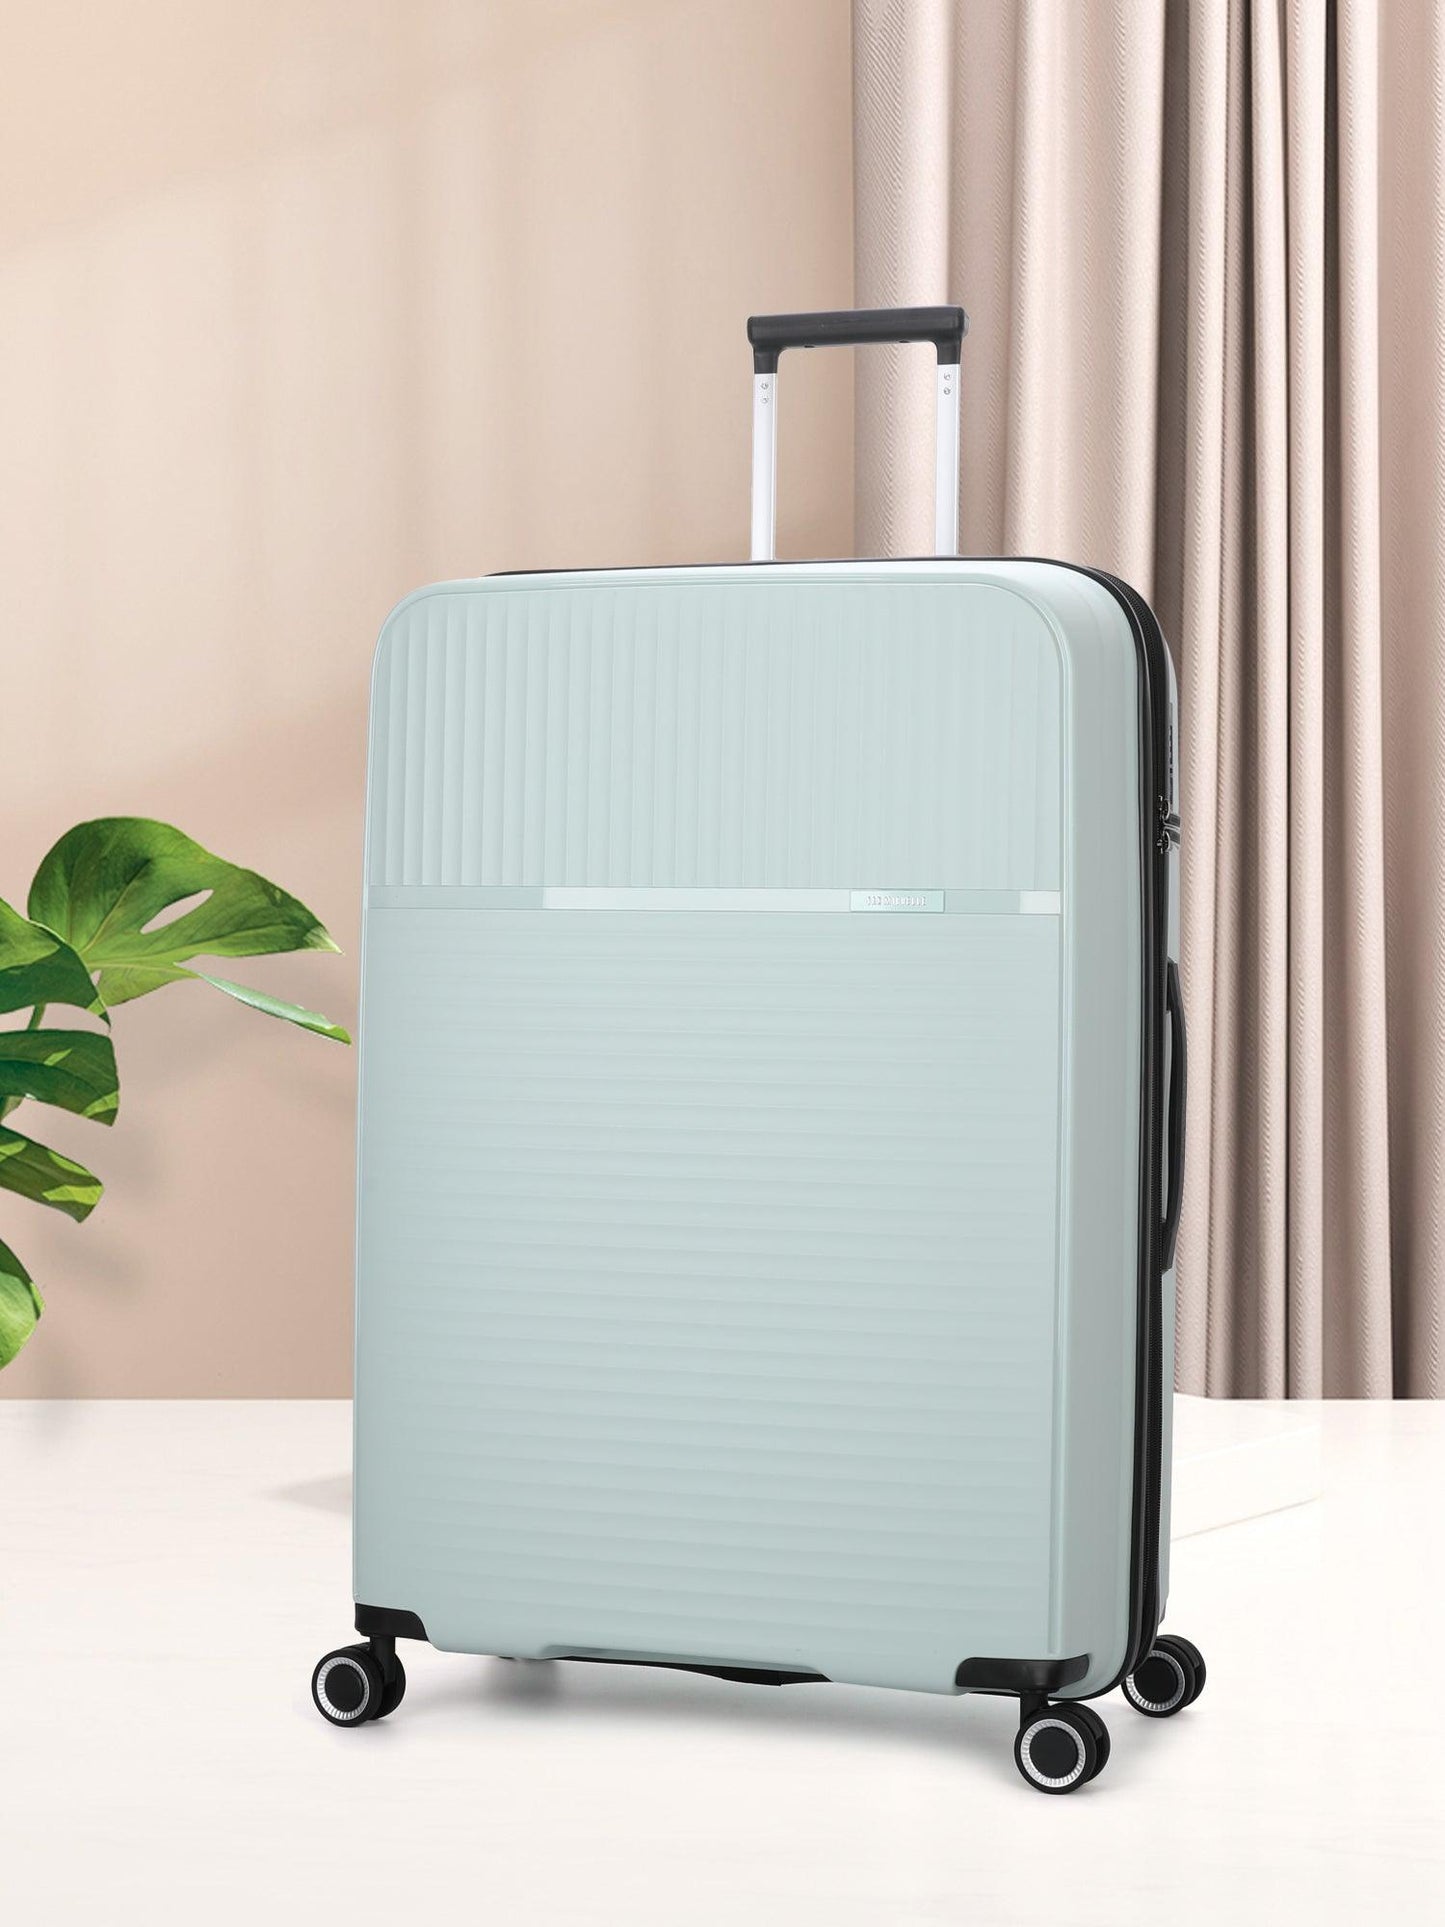 San Michelle Light Traveller 54cm Suitcase - White - San Michelle Bags suitcase nz